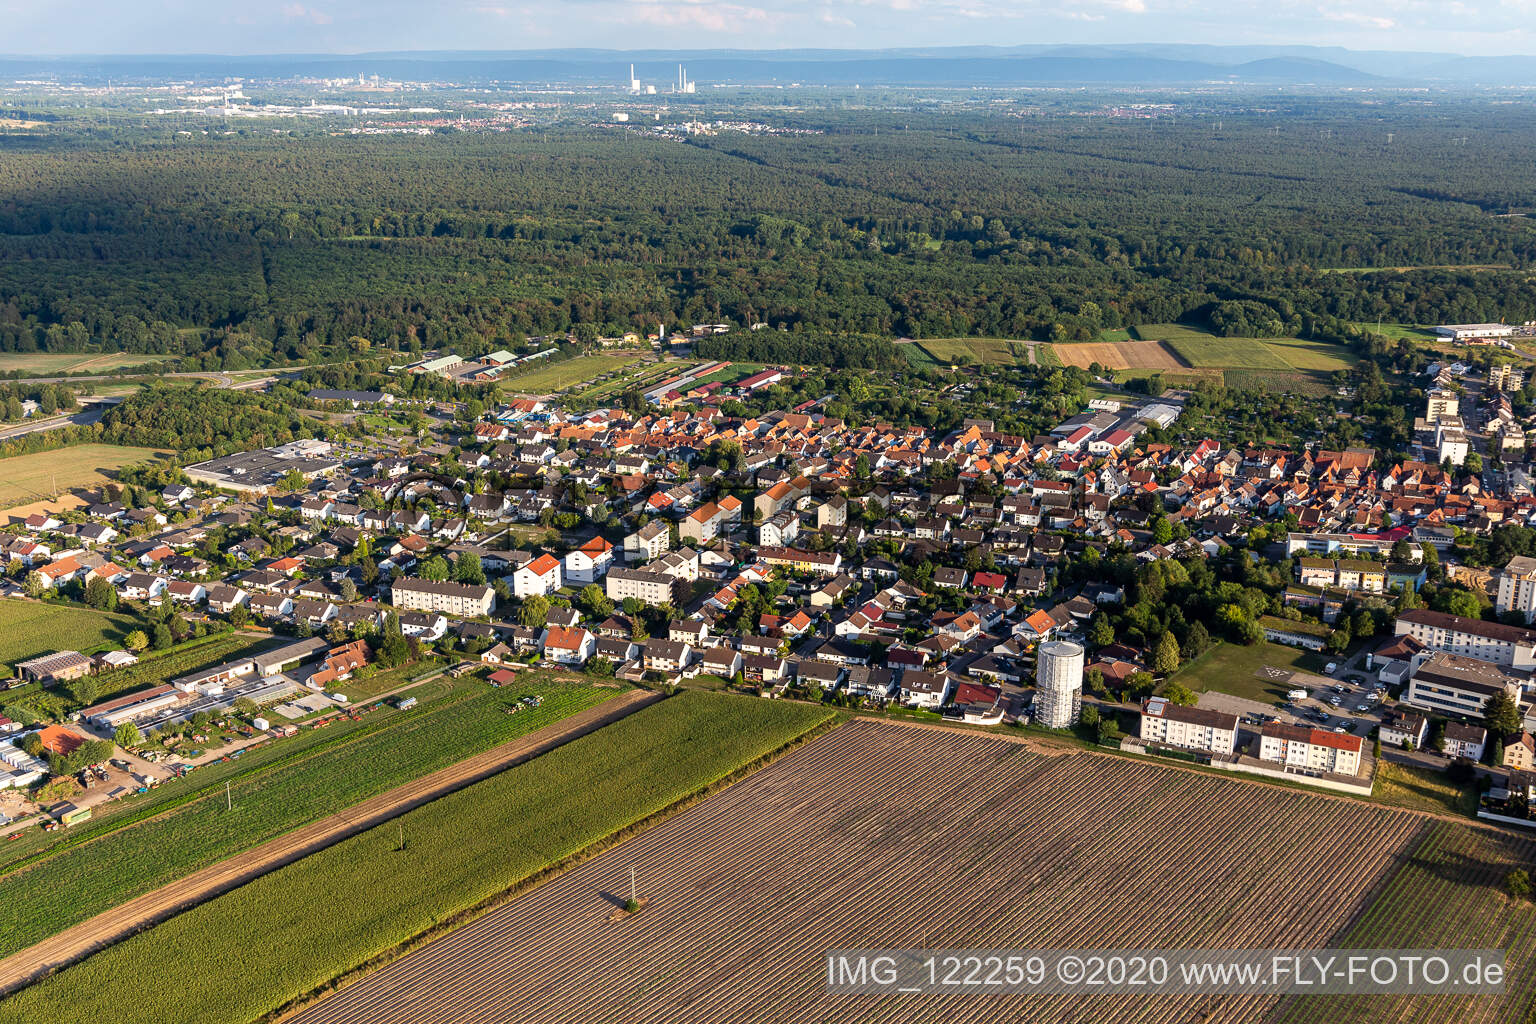 Vue aérienne de Château d'eau enveloppé à Kandel dans le département Rhénanie-Palatinat, Allemagne